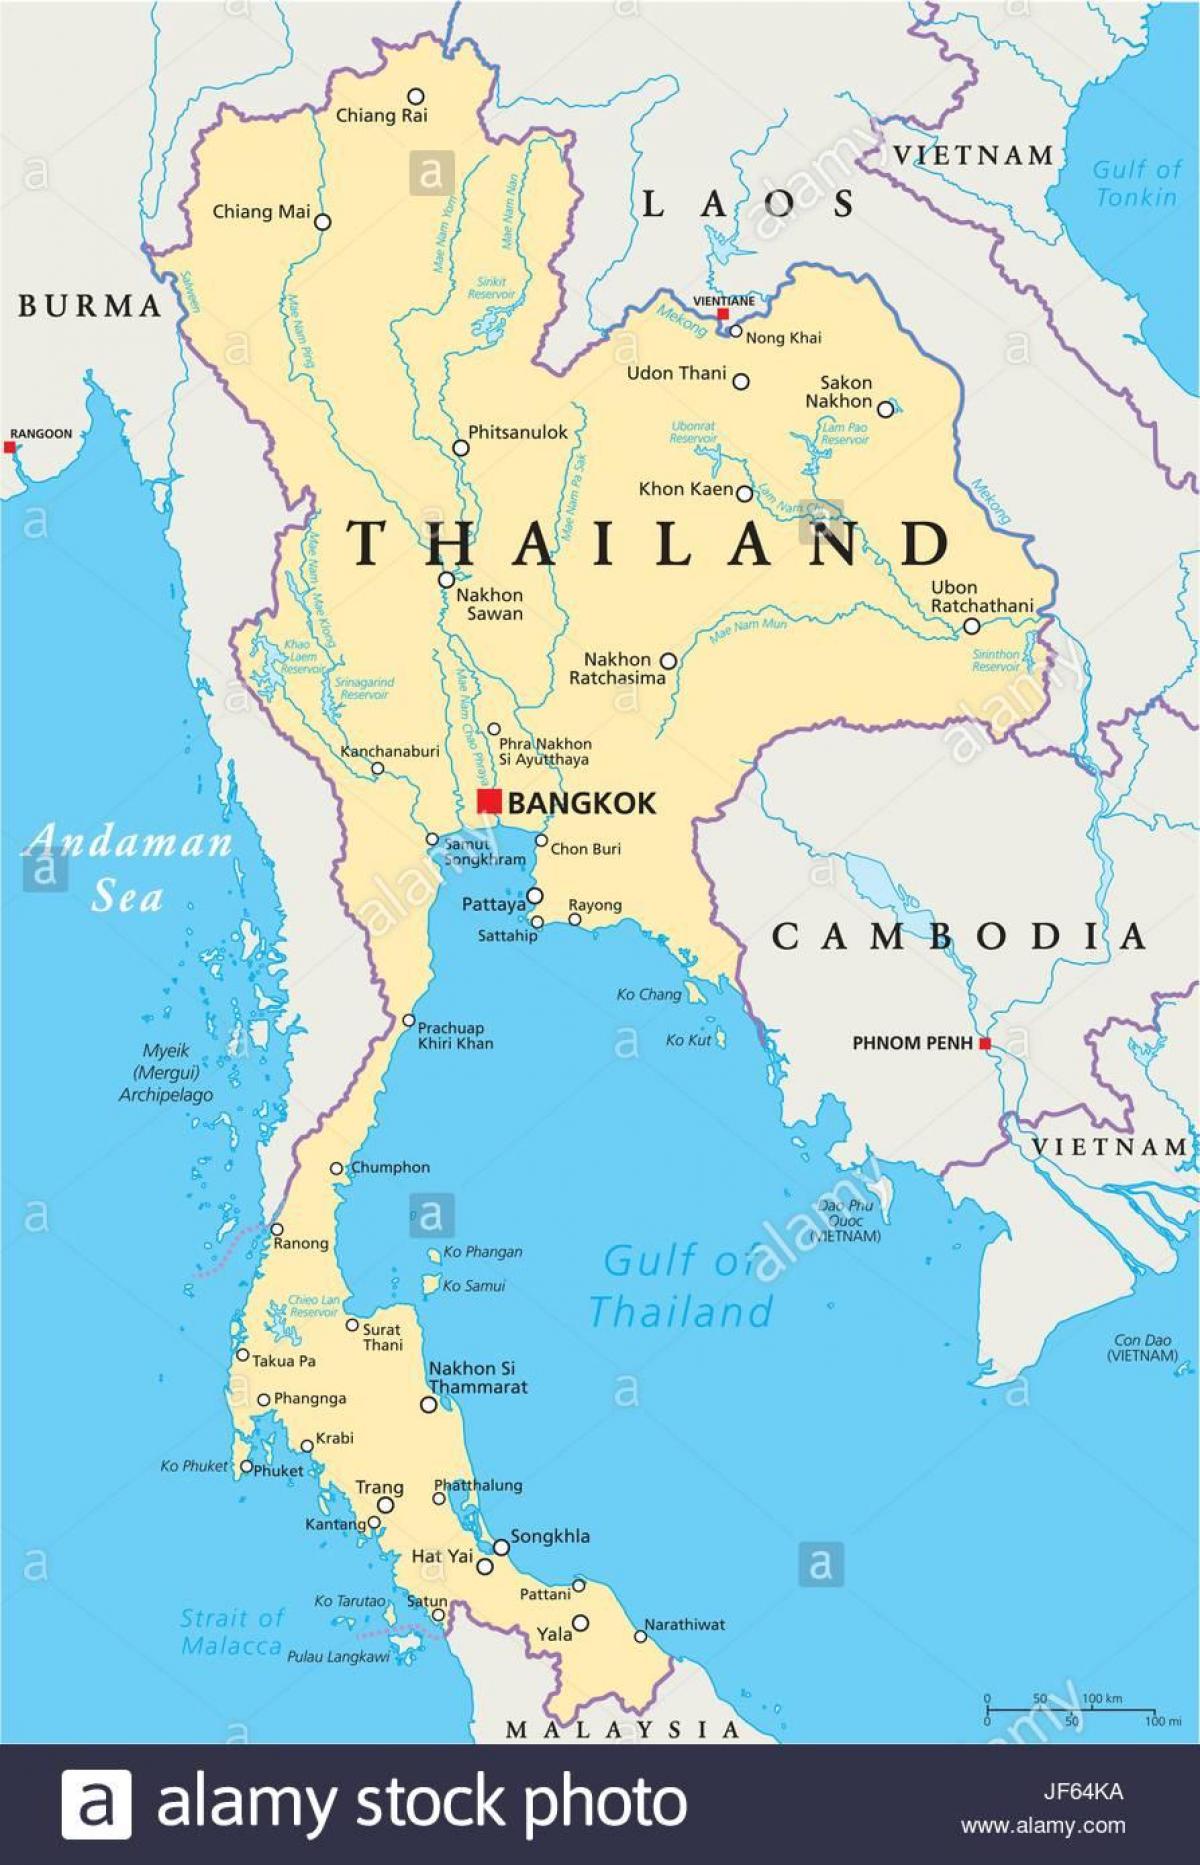 тайландын бангкок дэлхийн газрын зураг